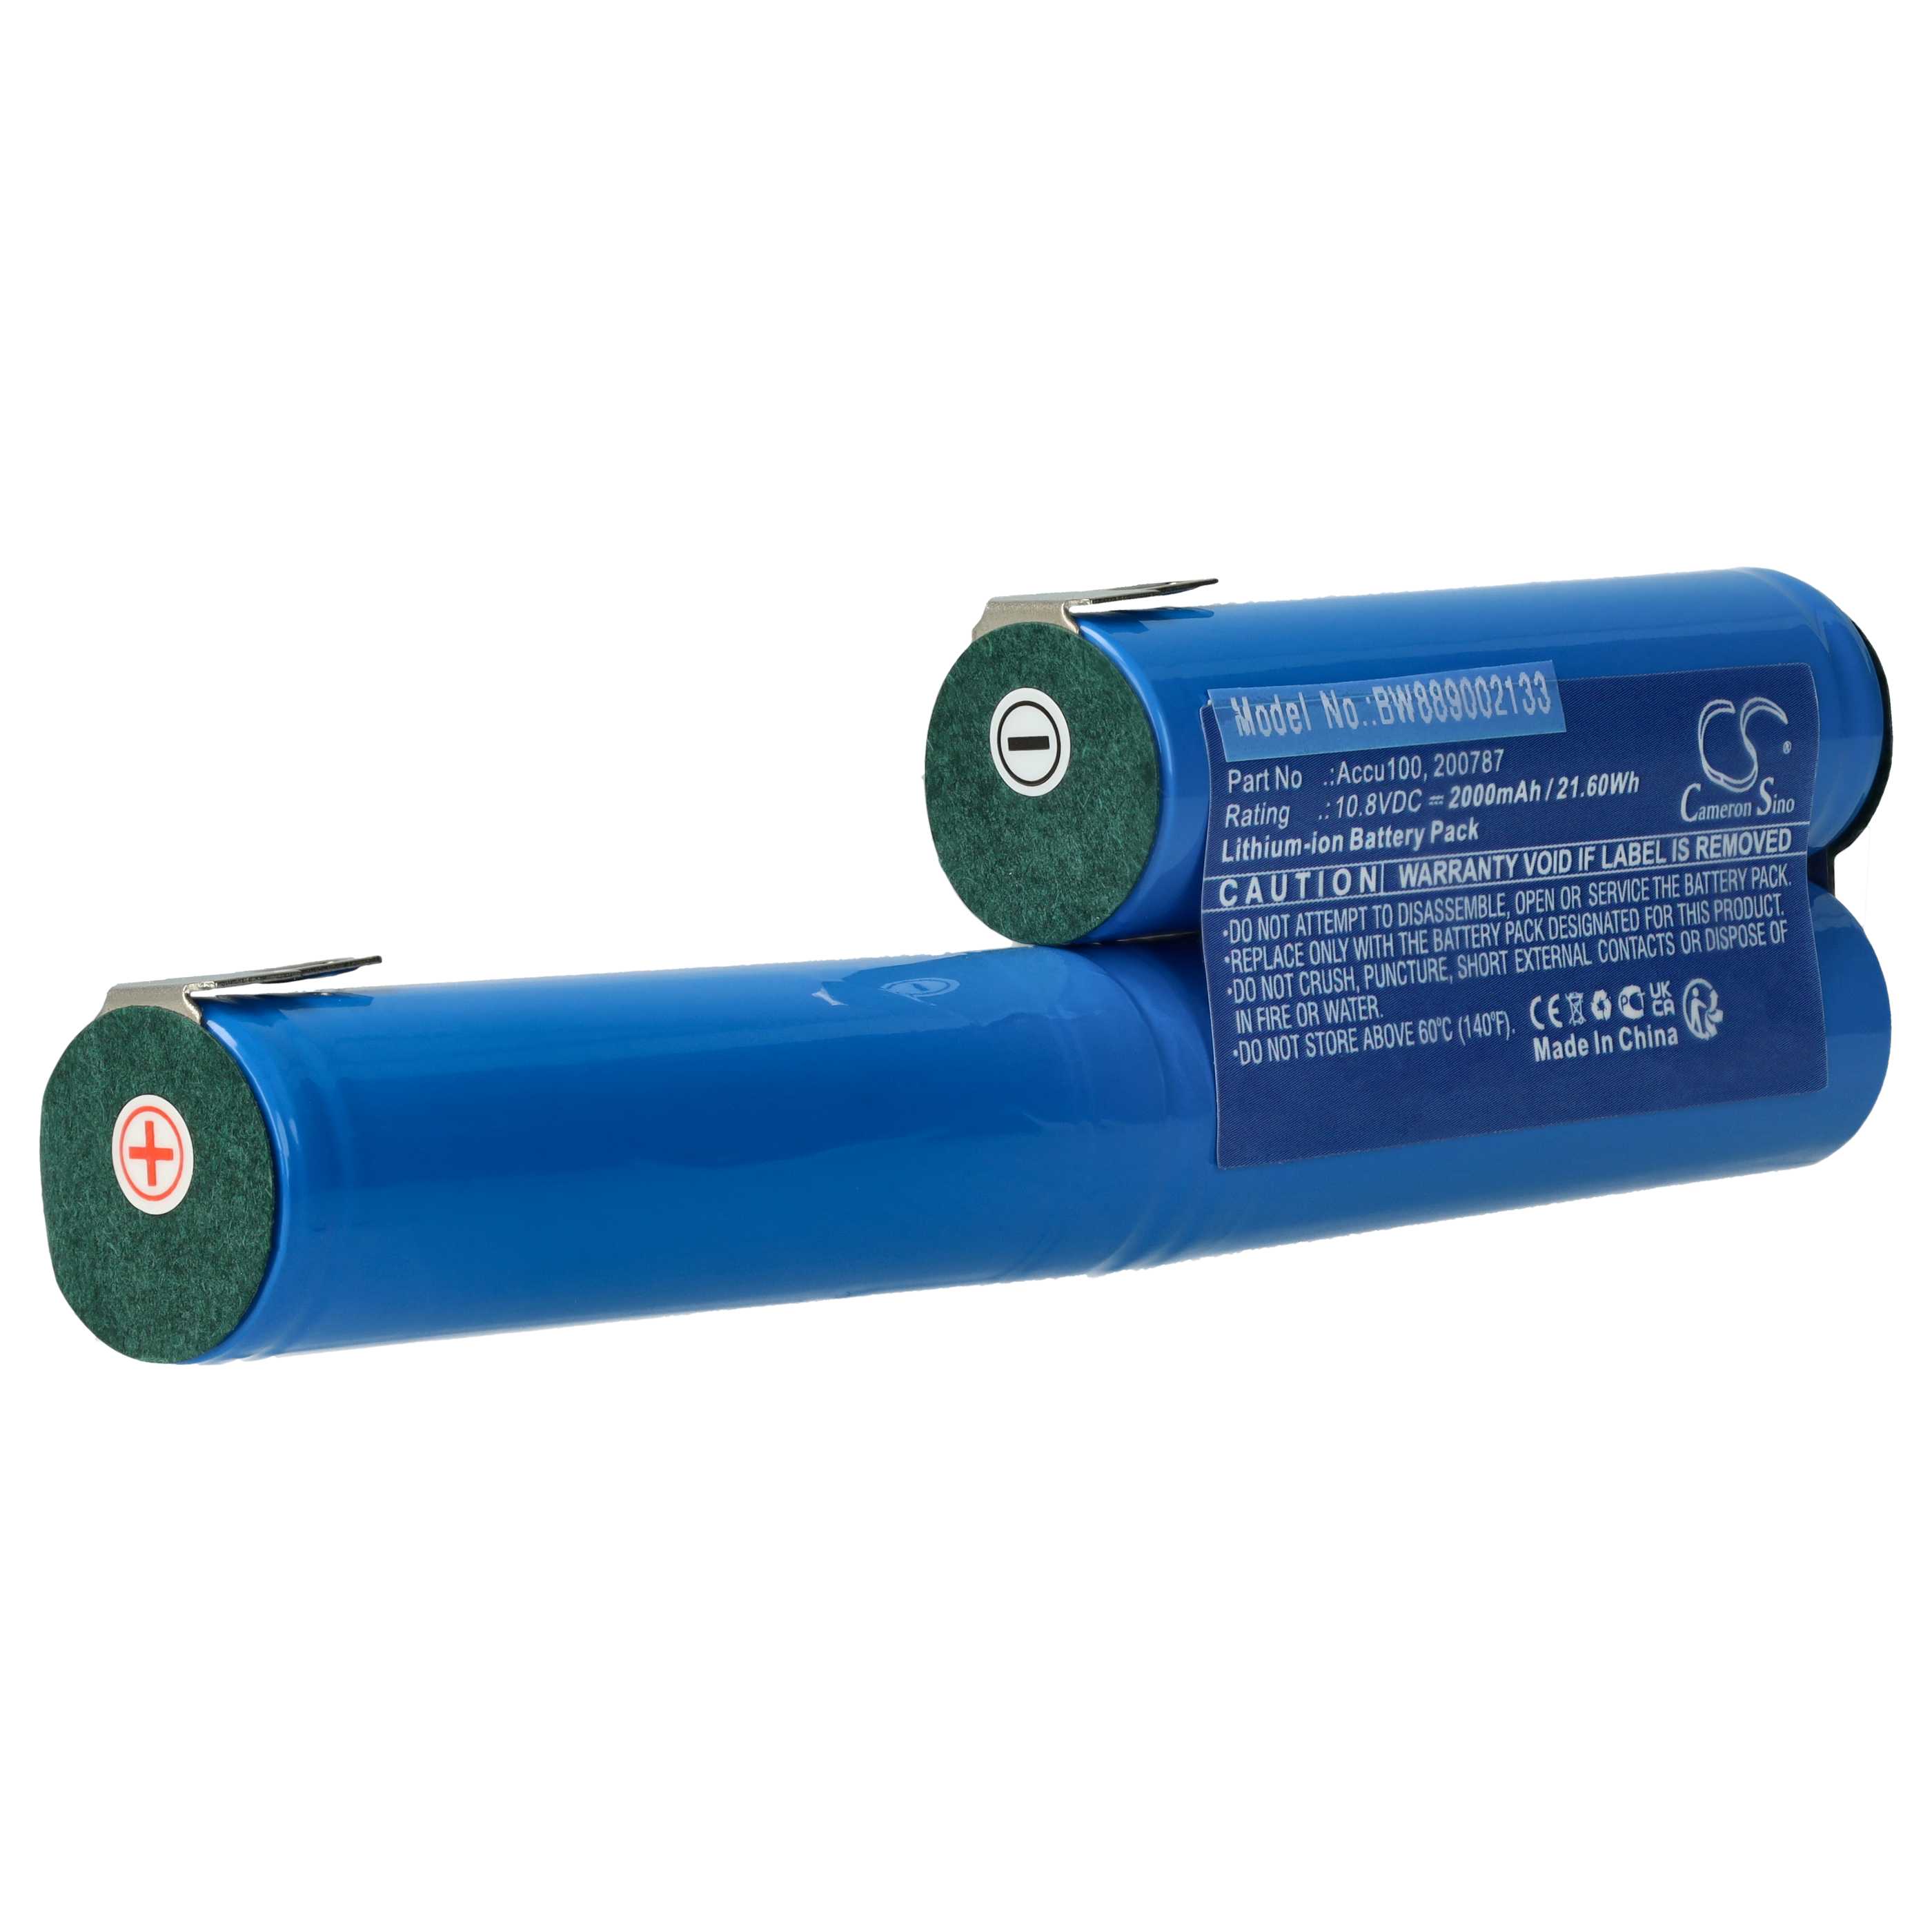 Batterie remplace Bosch 08830-00.640.00, 08804-00.640.00 pour outil de jardinage - 4200mAh 11,1V Li-ion